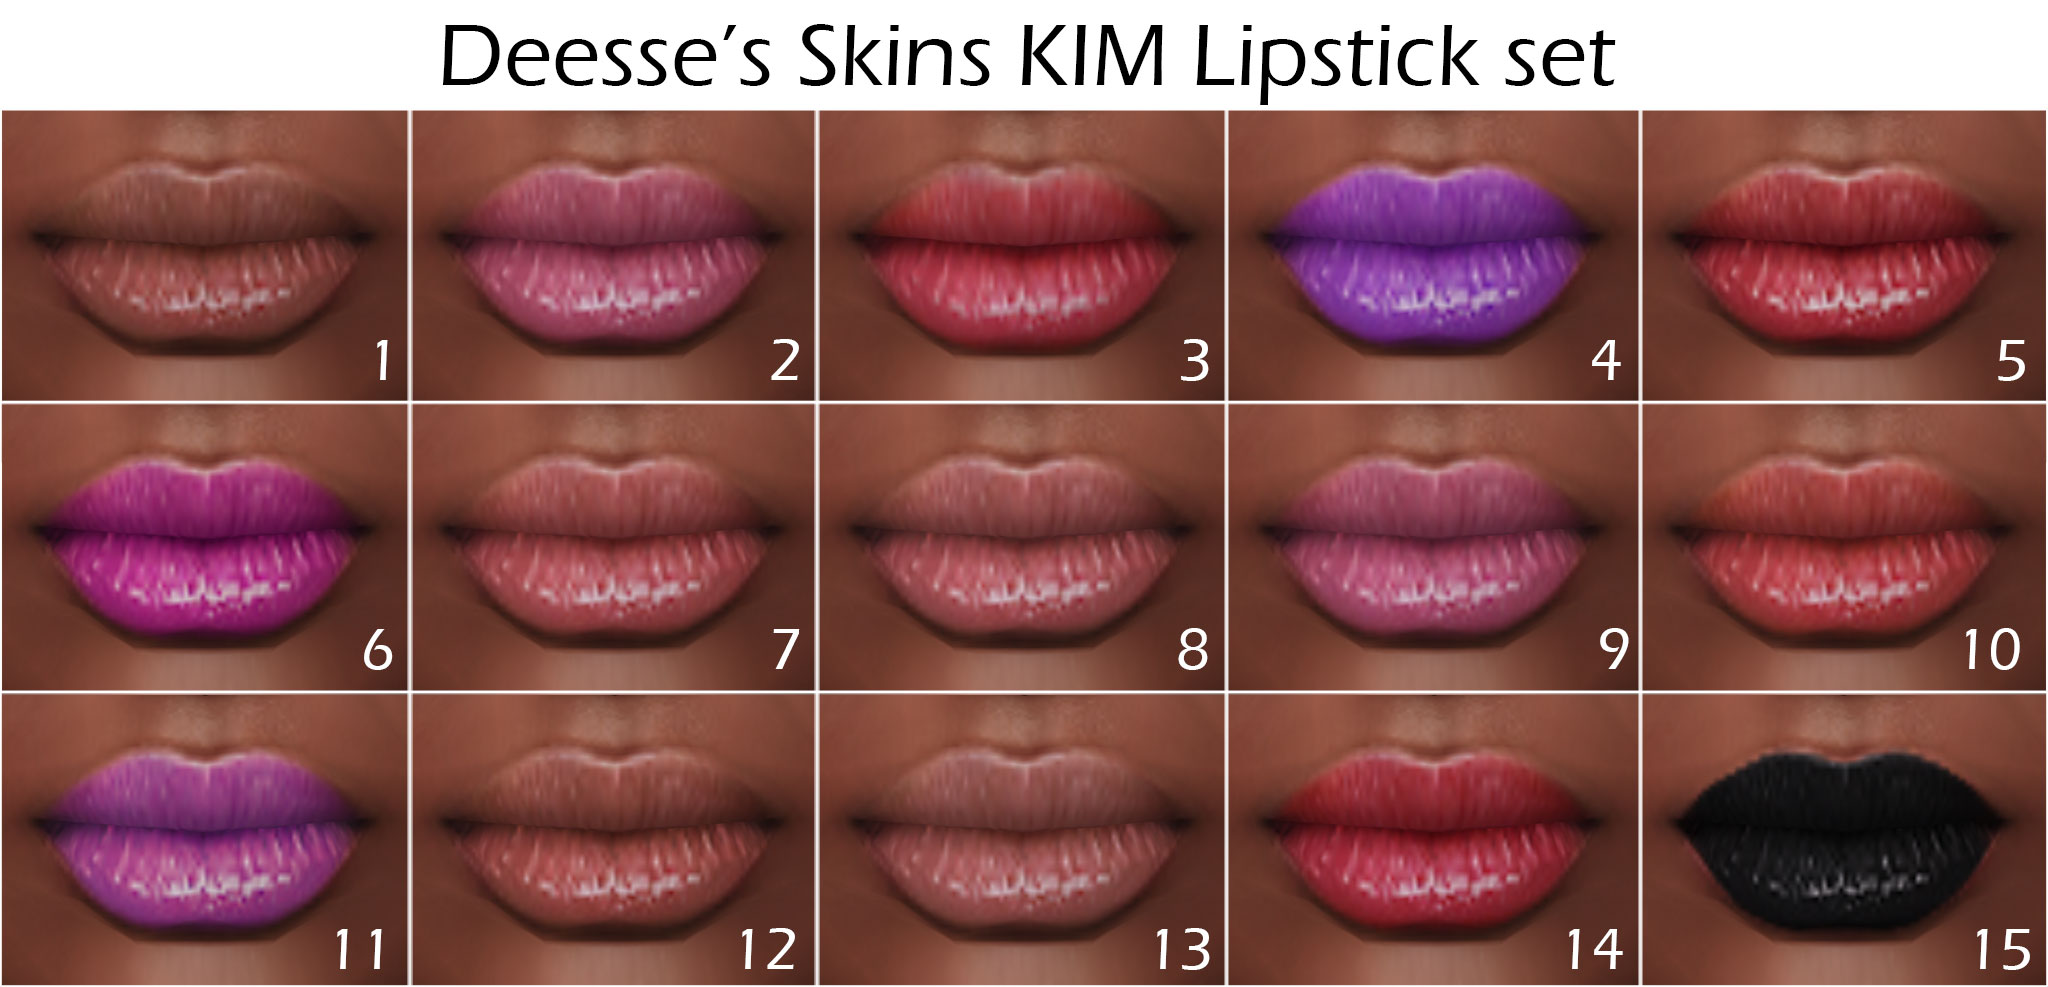 KIM-lipsticks-set